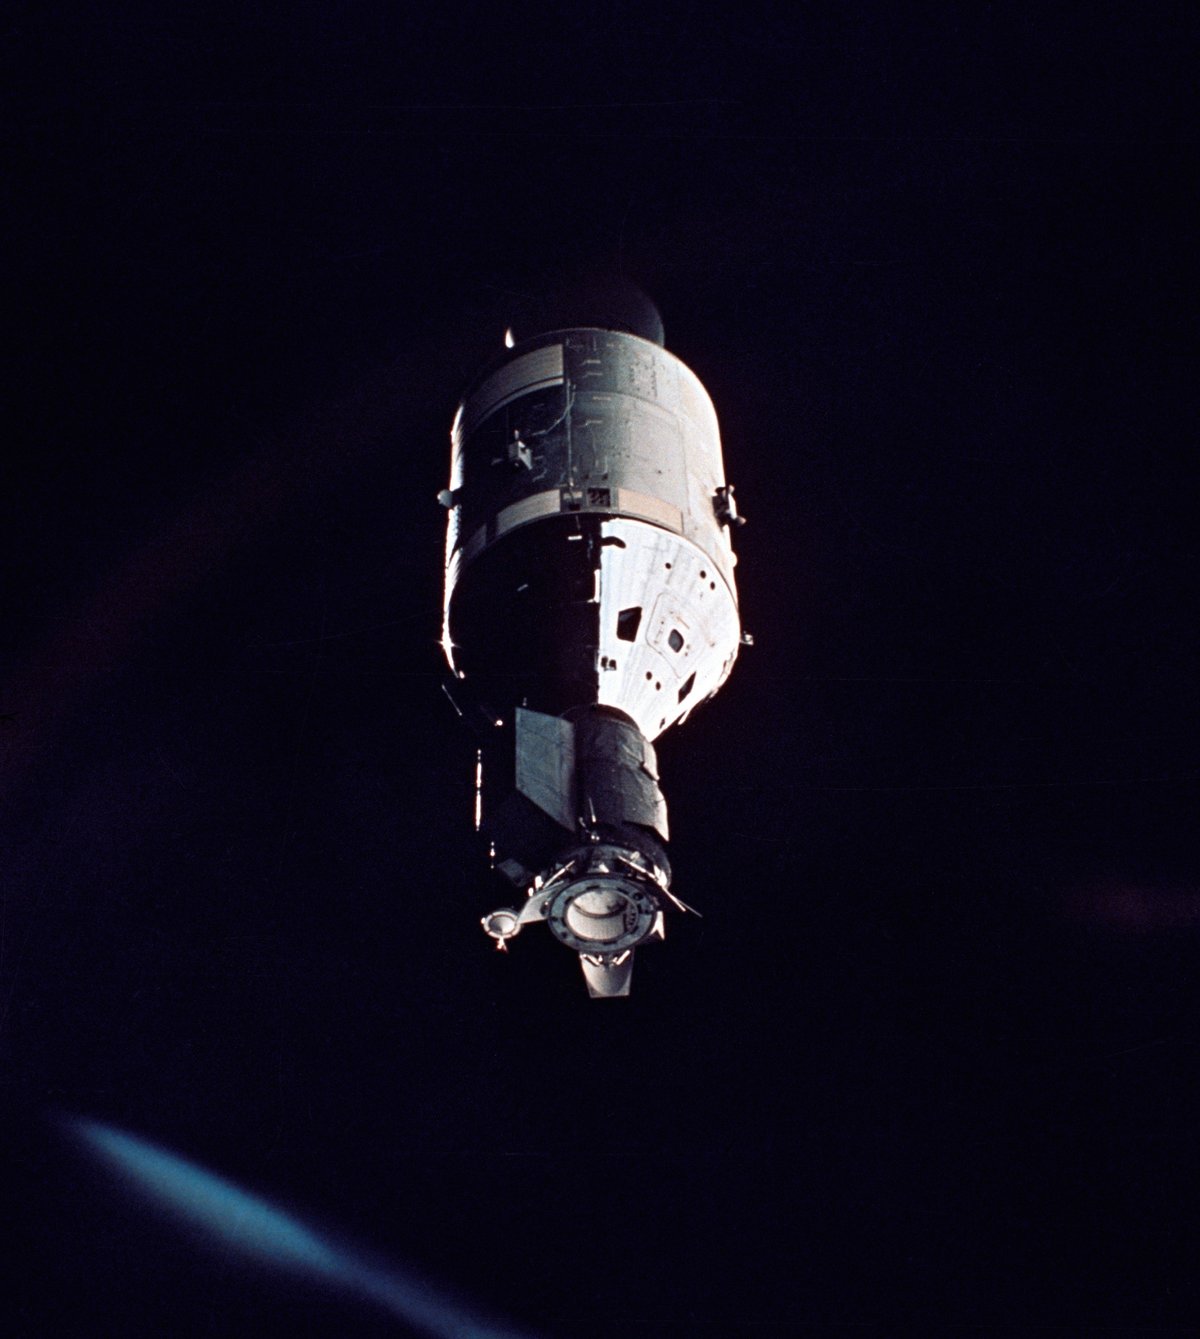 Photo prise par l&#039;équipage soviétique. On voit bien ici l&#039;adaptateur fixé sur la capsule Apollo et qui lui donne un &quot;long nez&quot;. Crédits NASA/Roscosmos